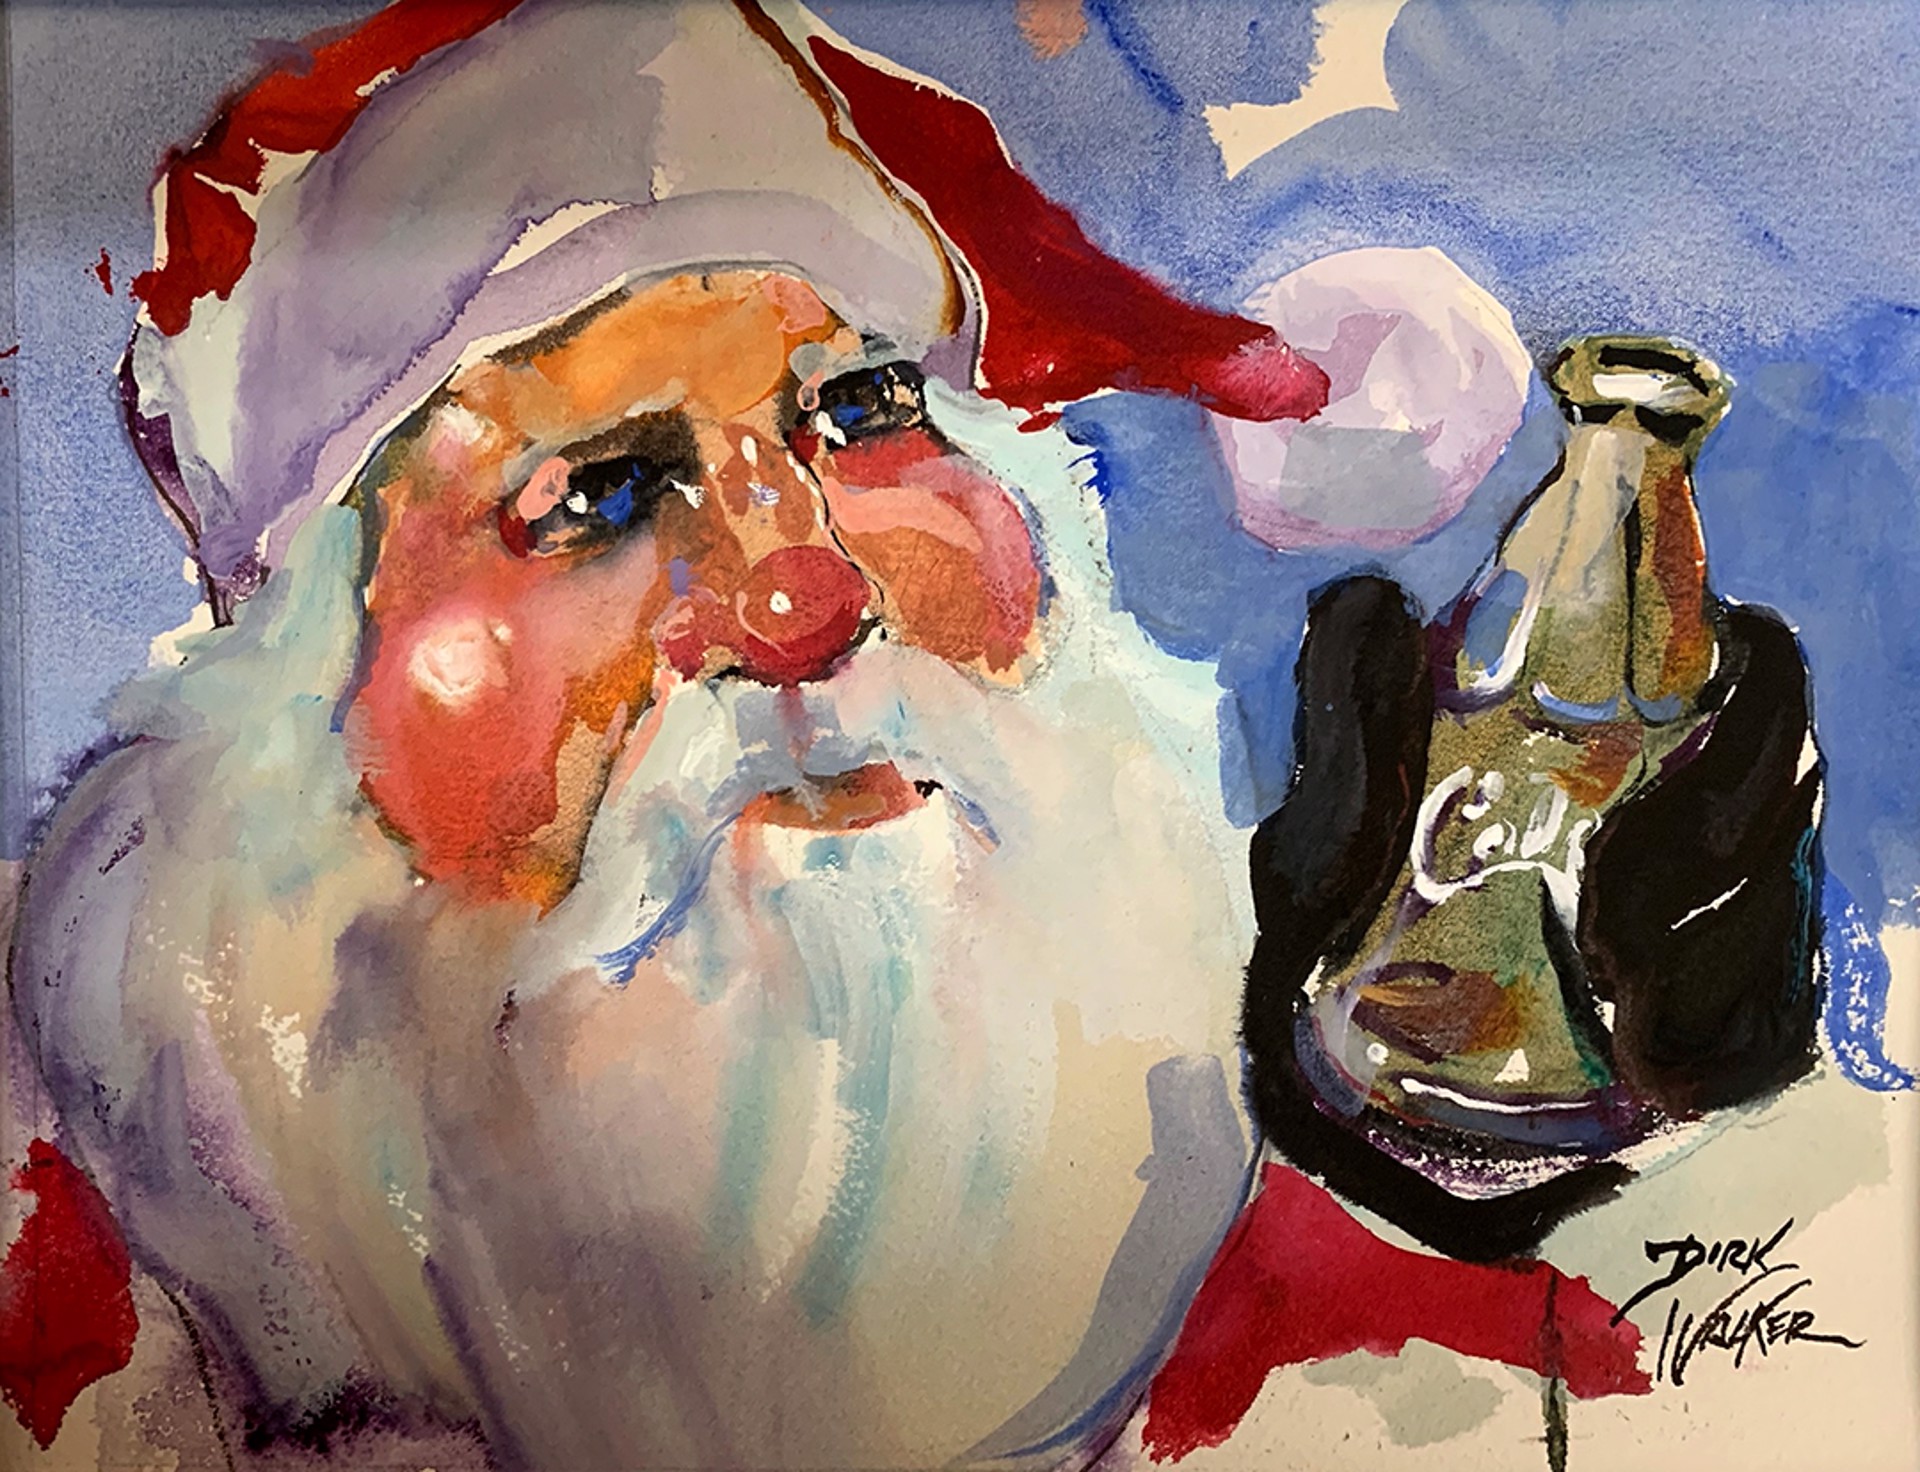 Santa and a Coke by Dirk Walker